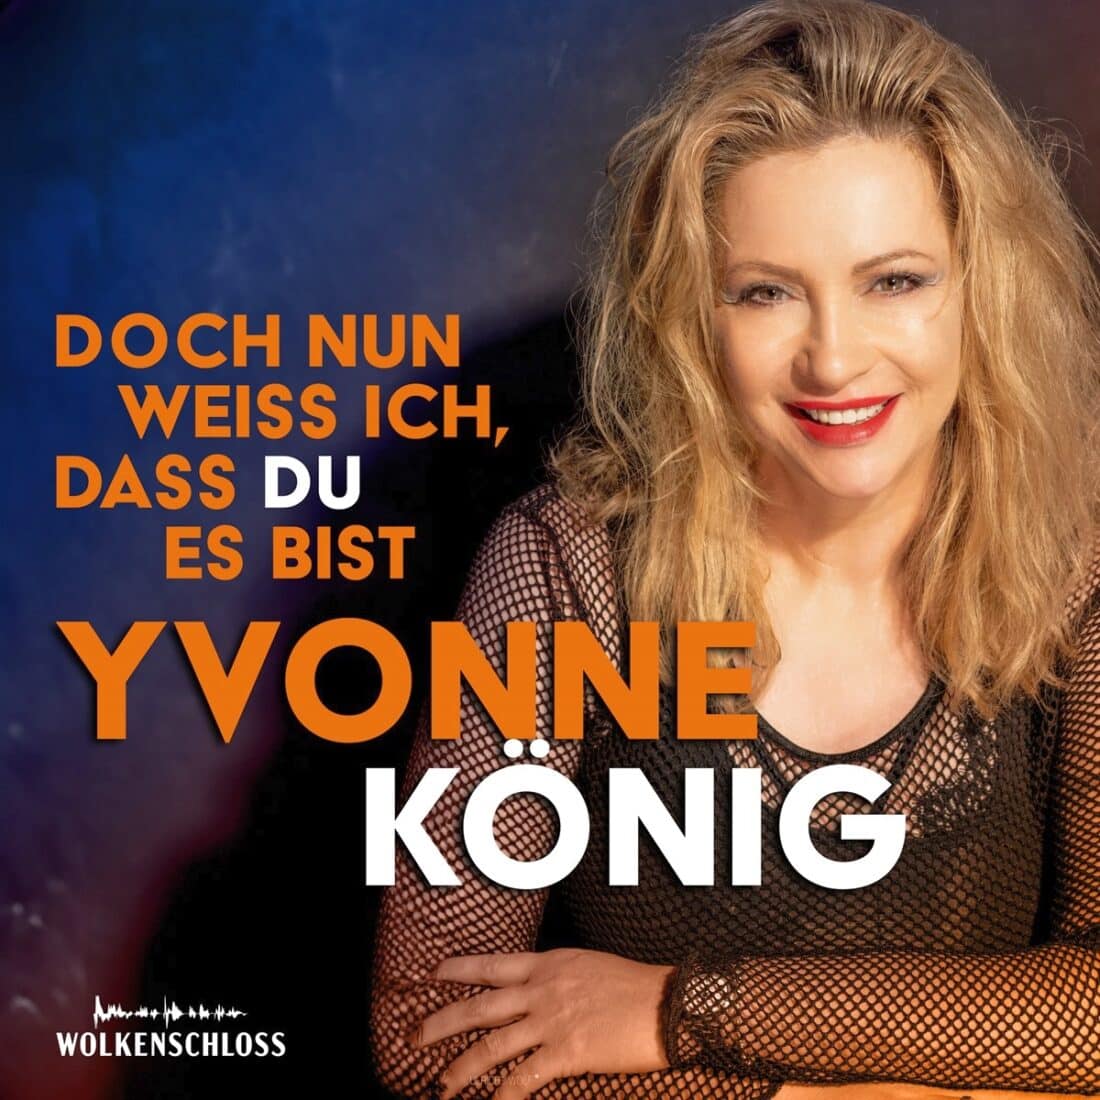 Yvonne König - Doch nun weiß ich, dass du es bist (Wolkenschloss)